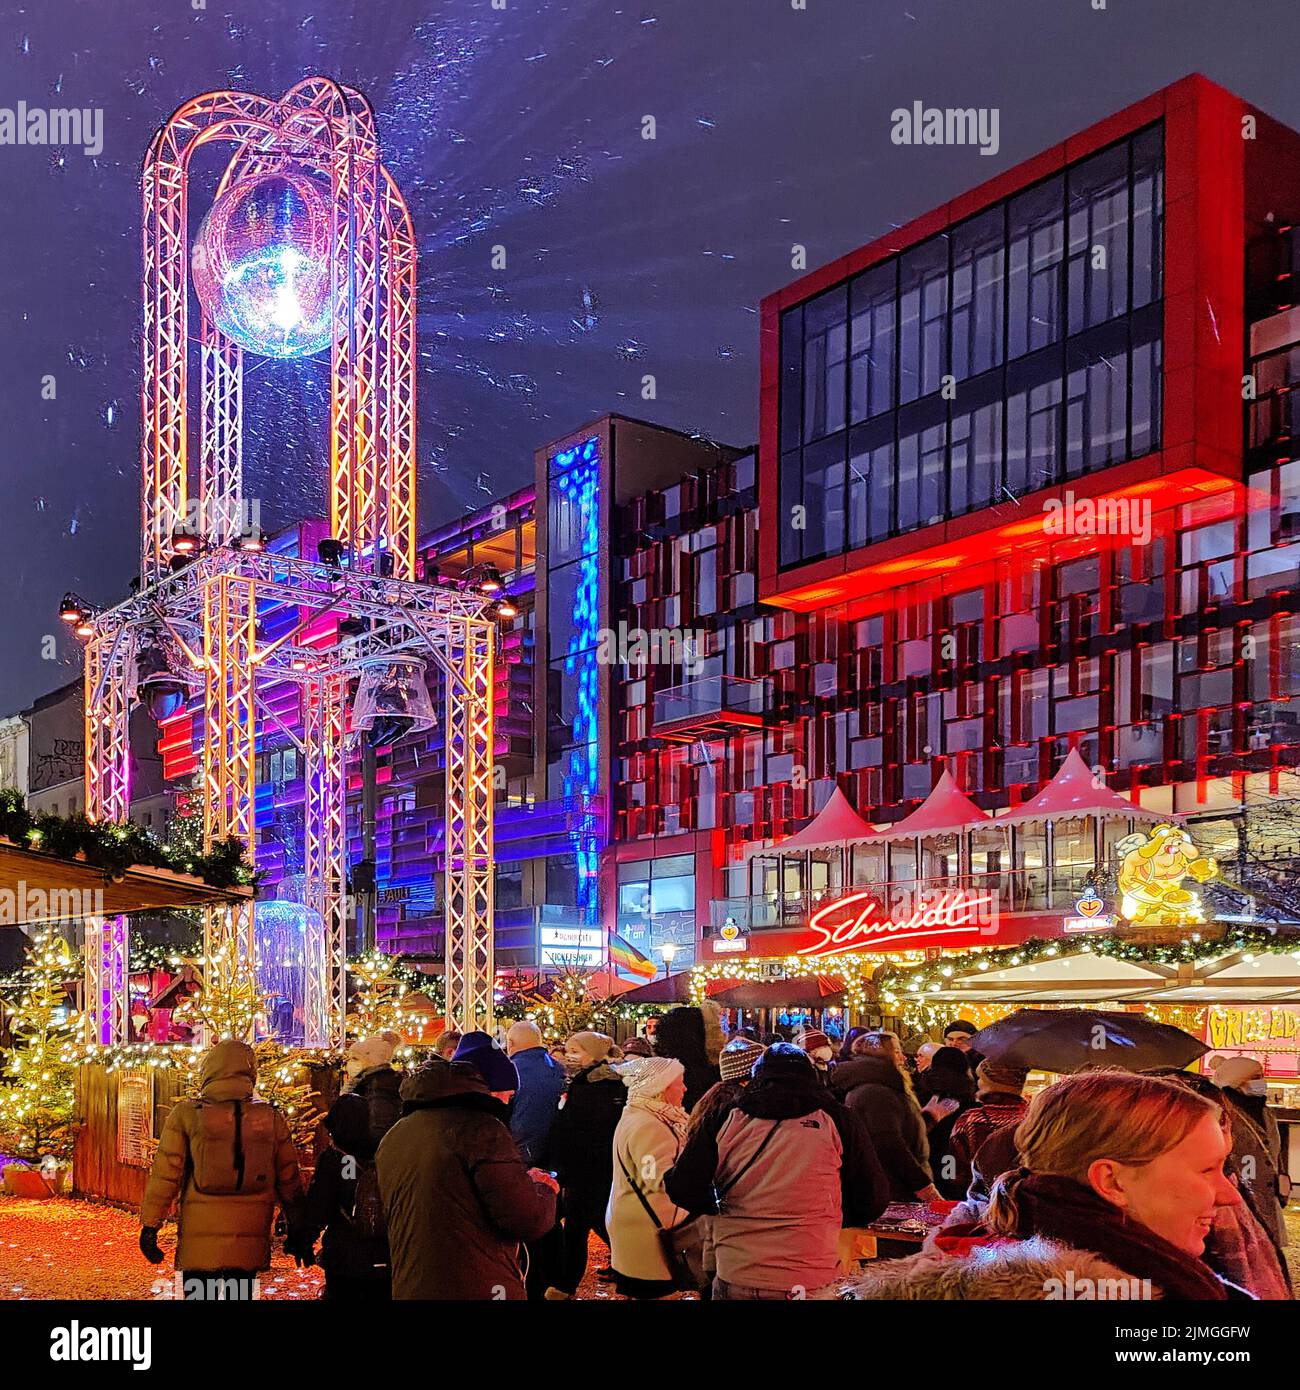 Santa Pauli, le marché de Noël le plus chaud de Hambourg, St. Pauli, Hambourg, Allemagne, Europe Banque D'Images